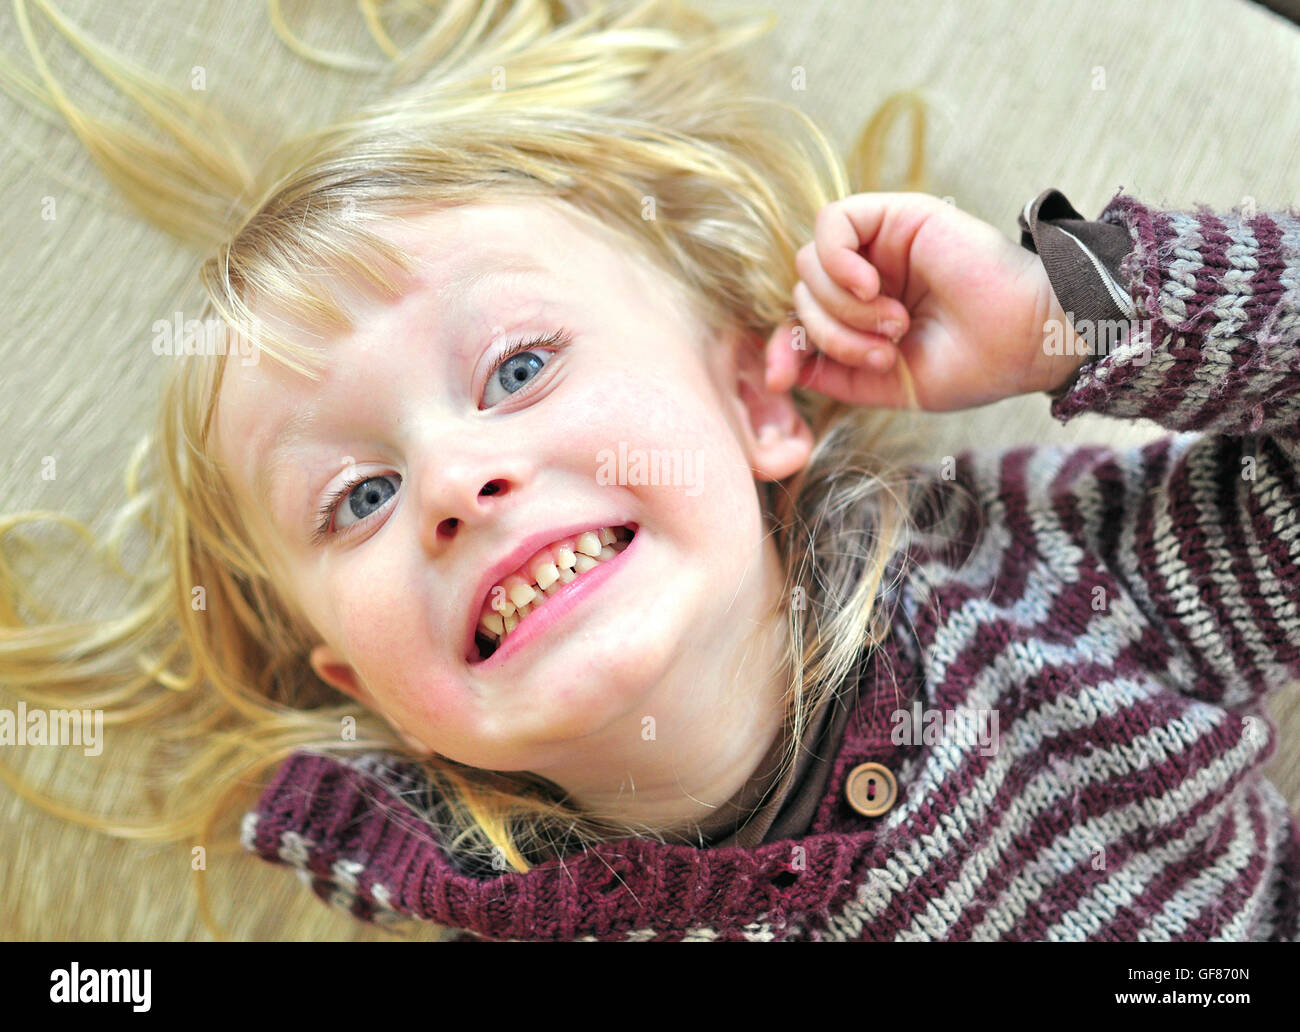 Cute smiling baby avec une longue chevelure blonde allongée sur le lit Banque D'Images